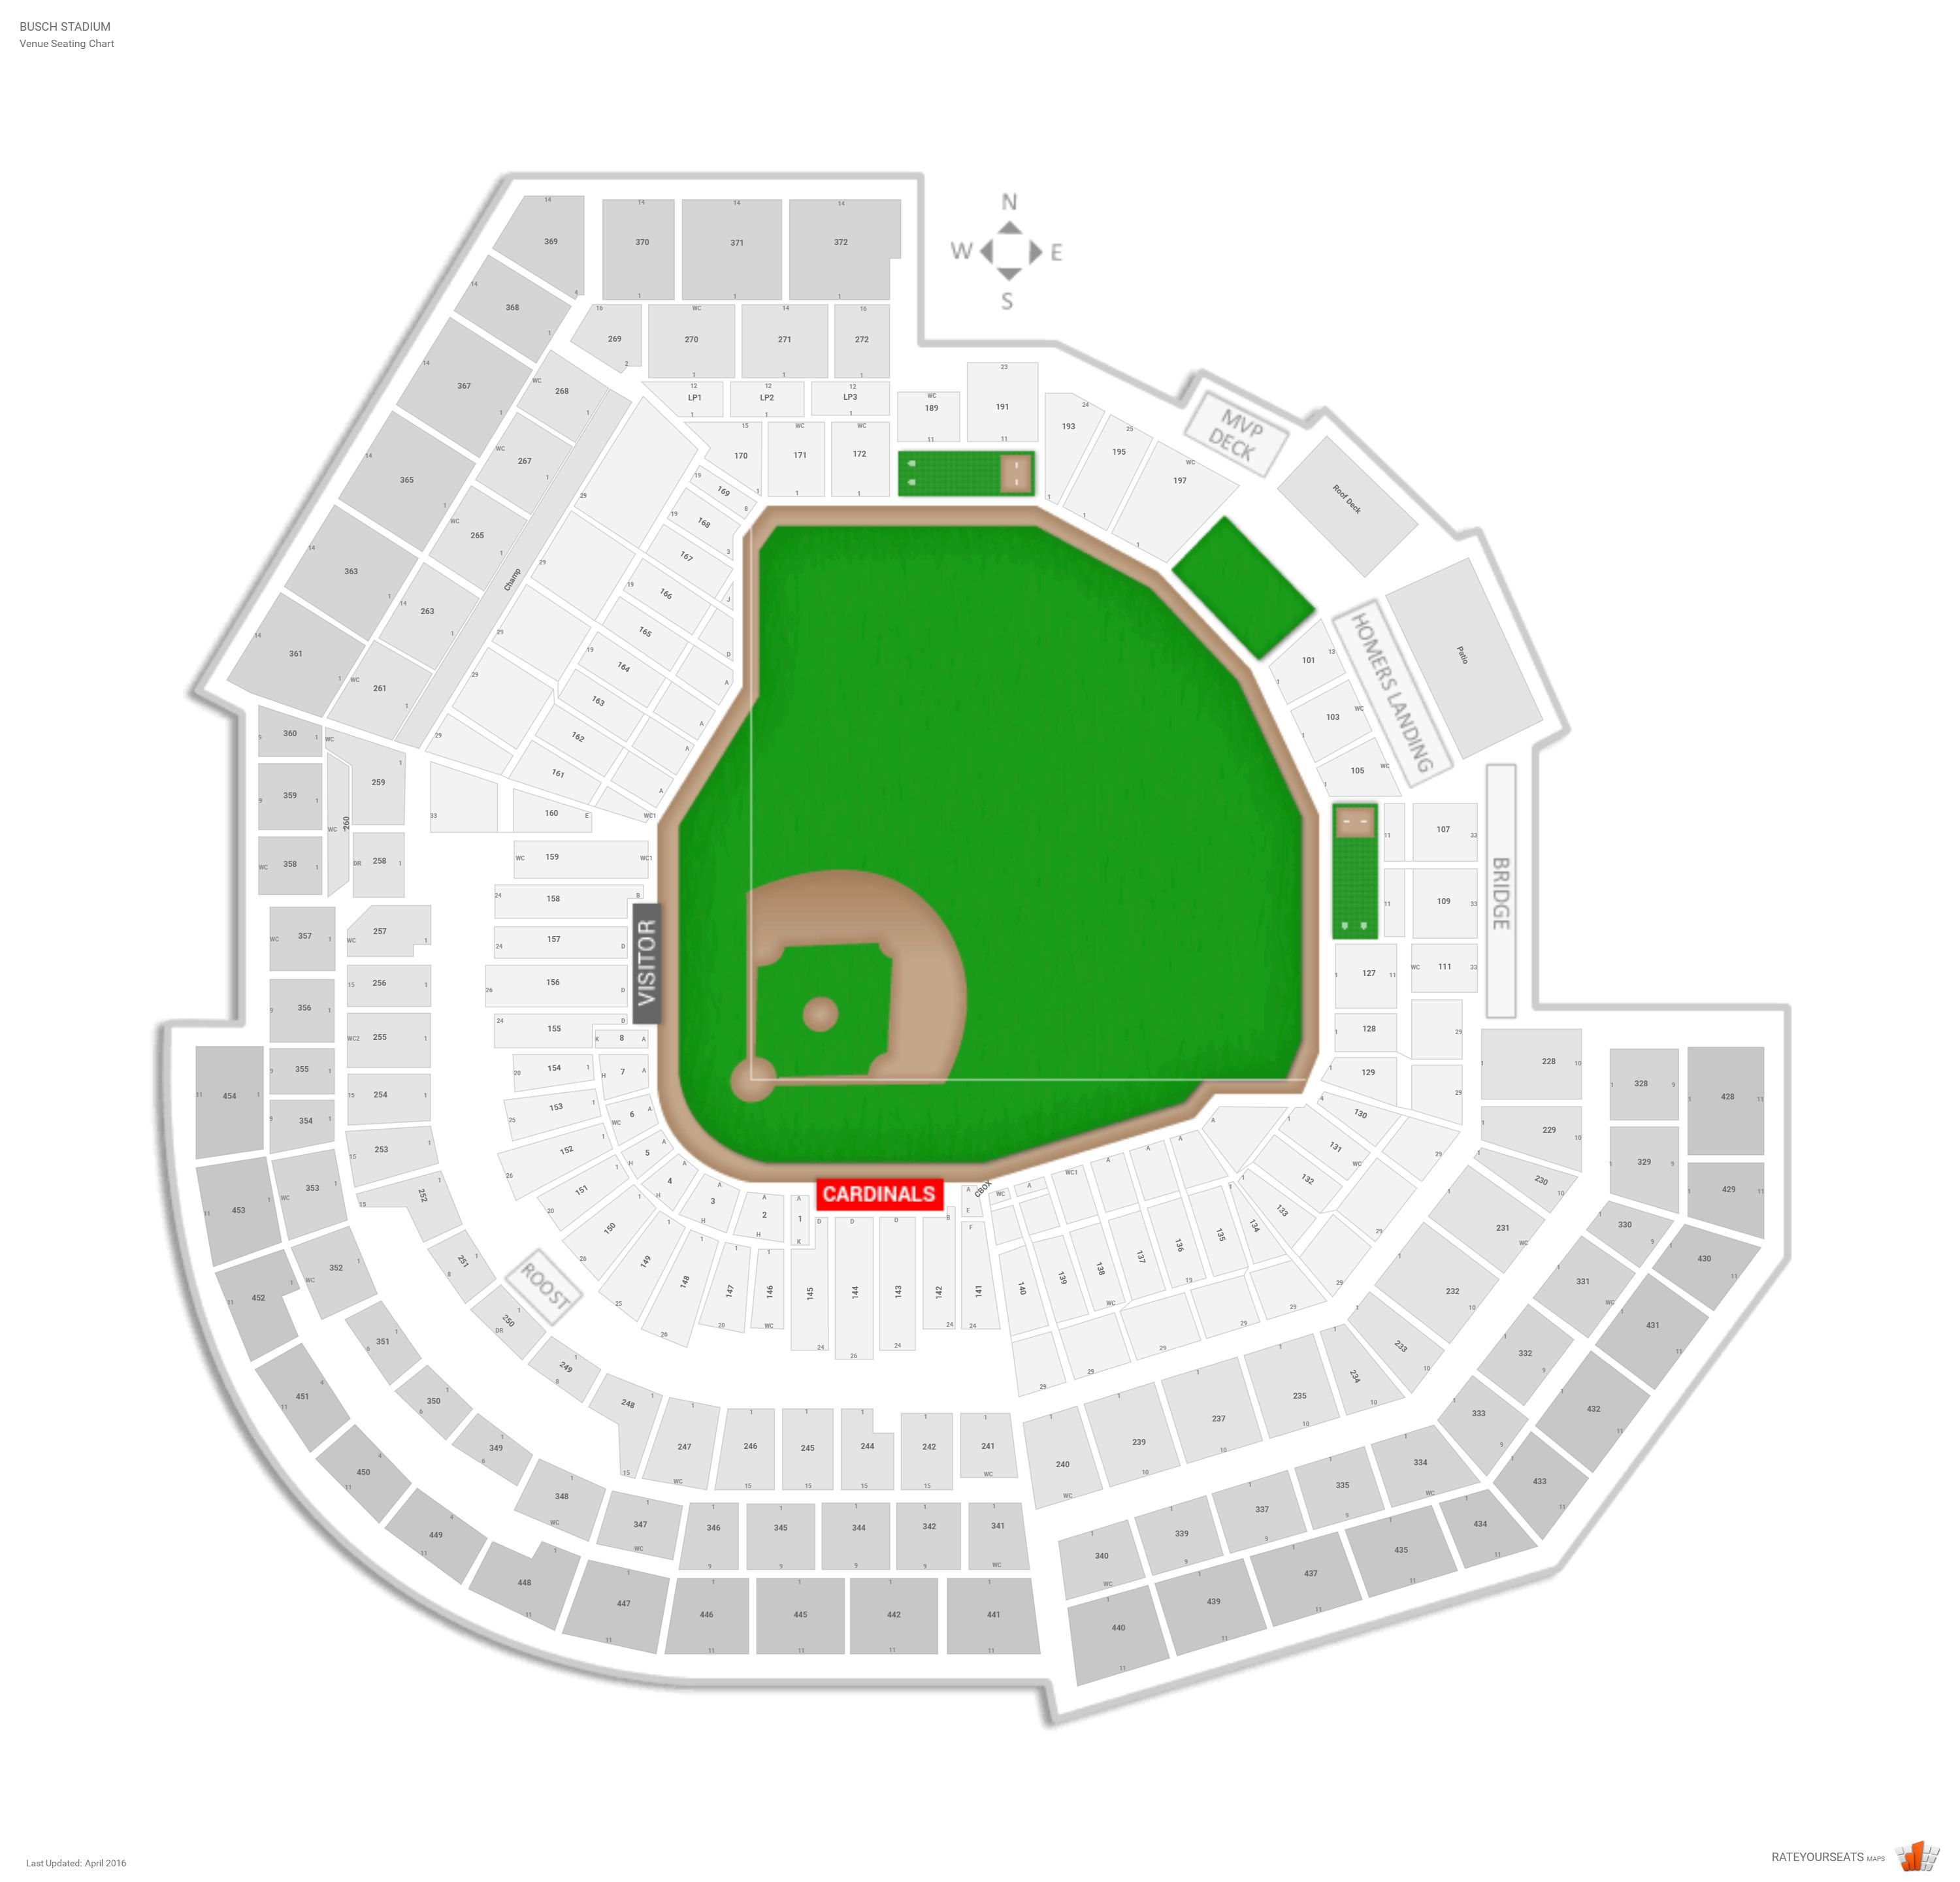 St. Louis Cardinals Seating Guide - Busch Stadium - www.lvbagssale.com